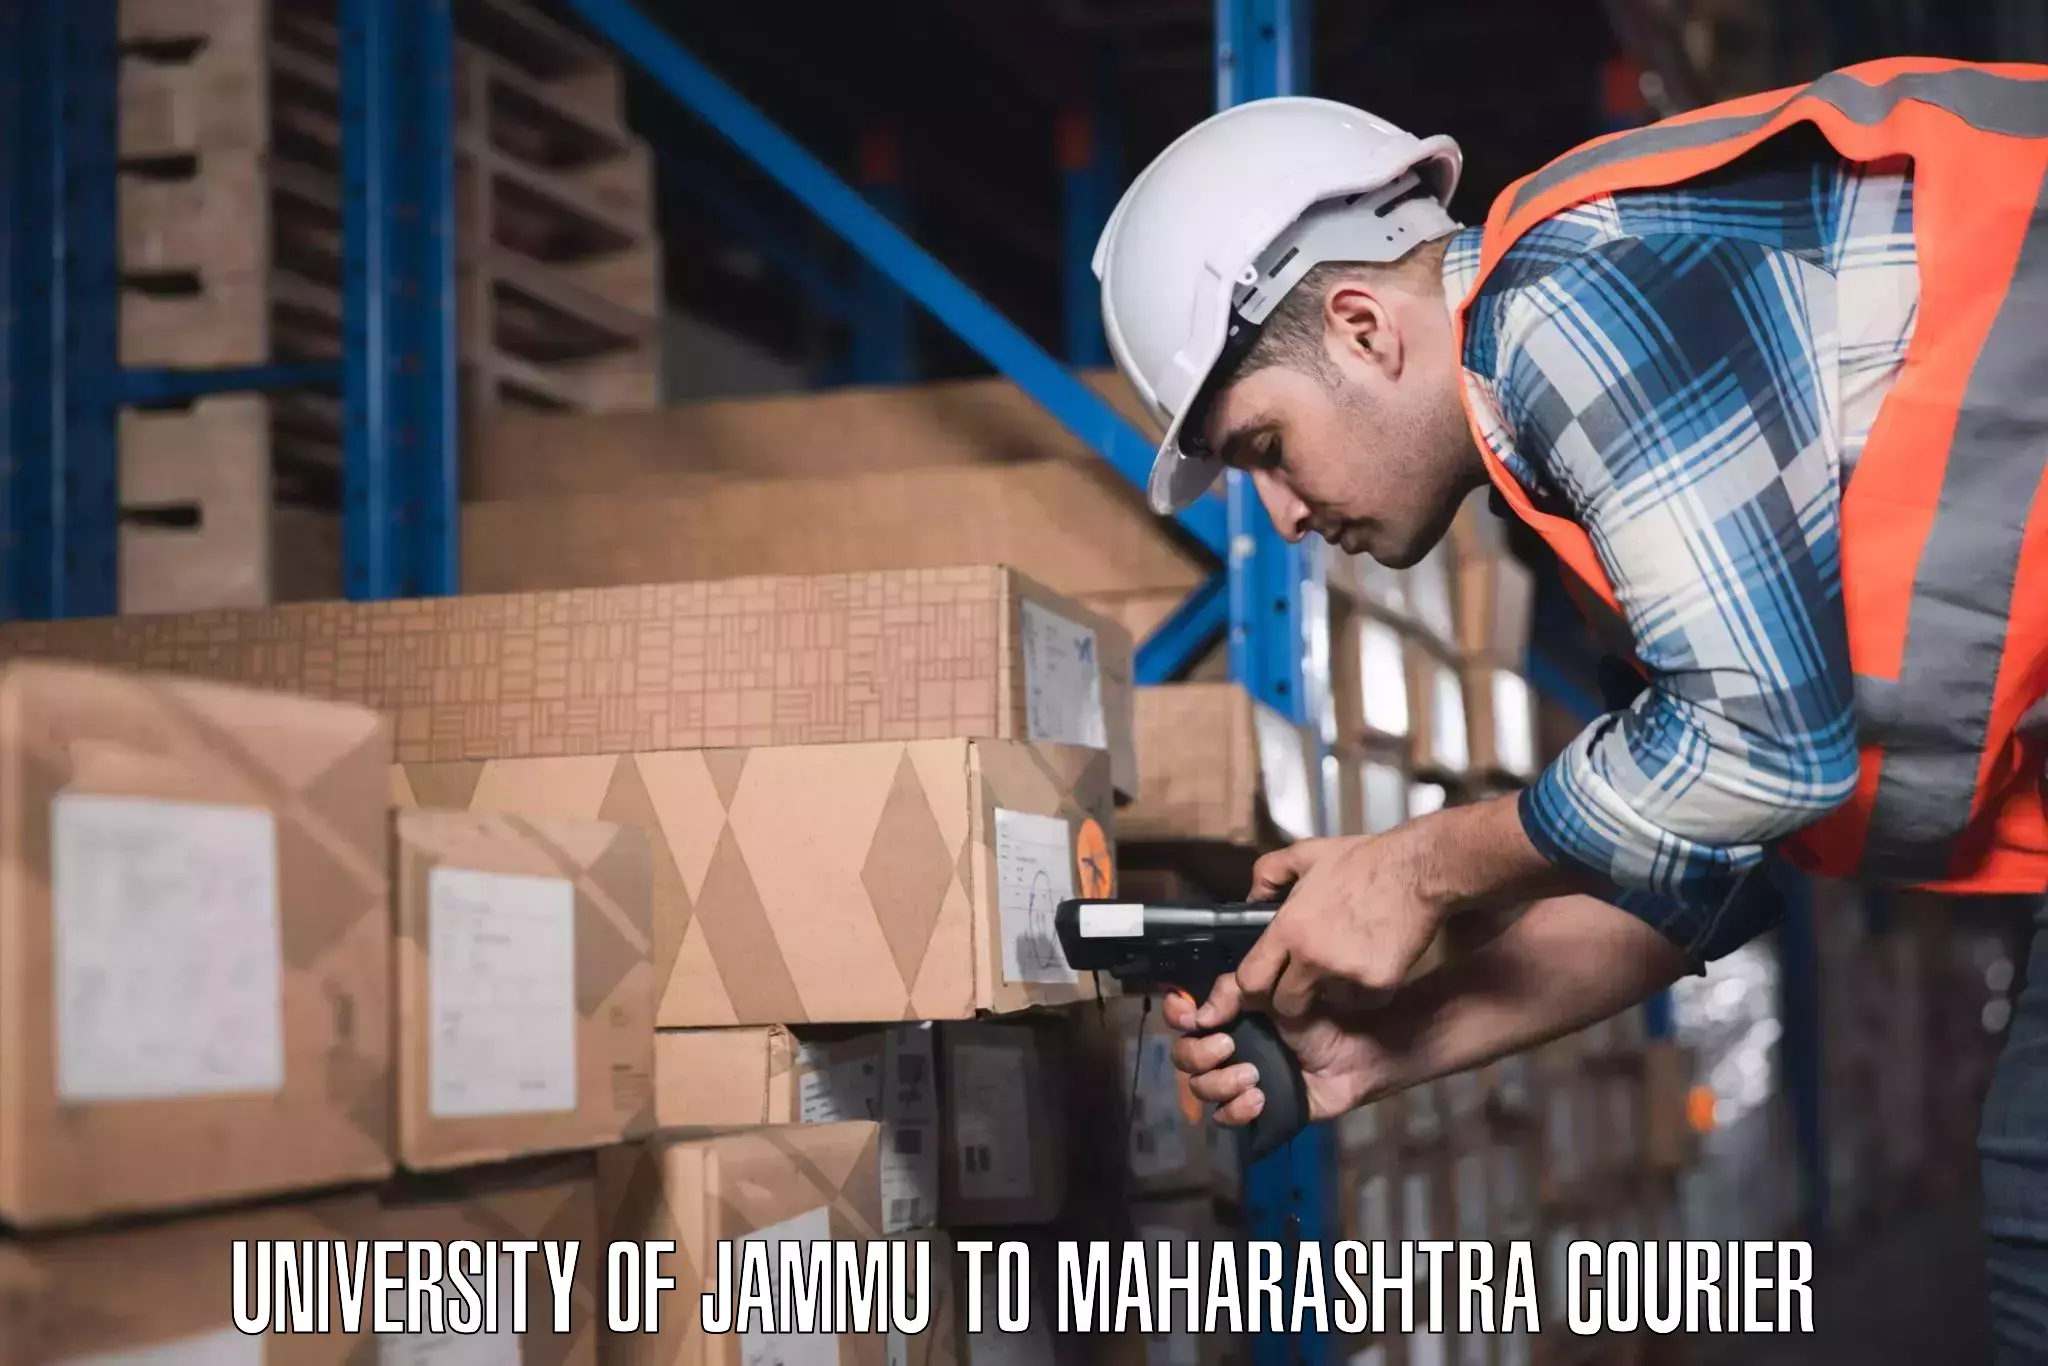 Baggage transport technology University of Jammu to Maharashtra